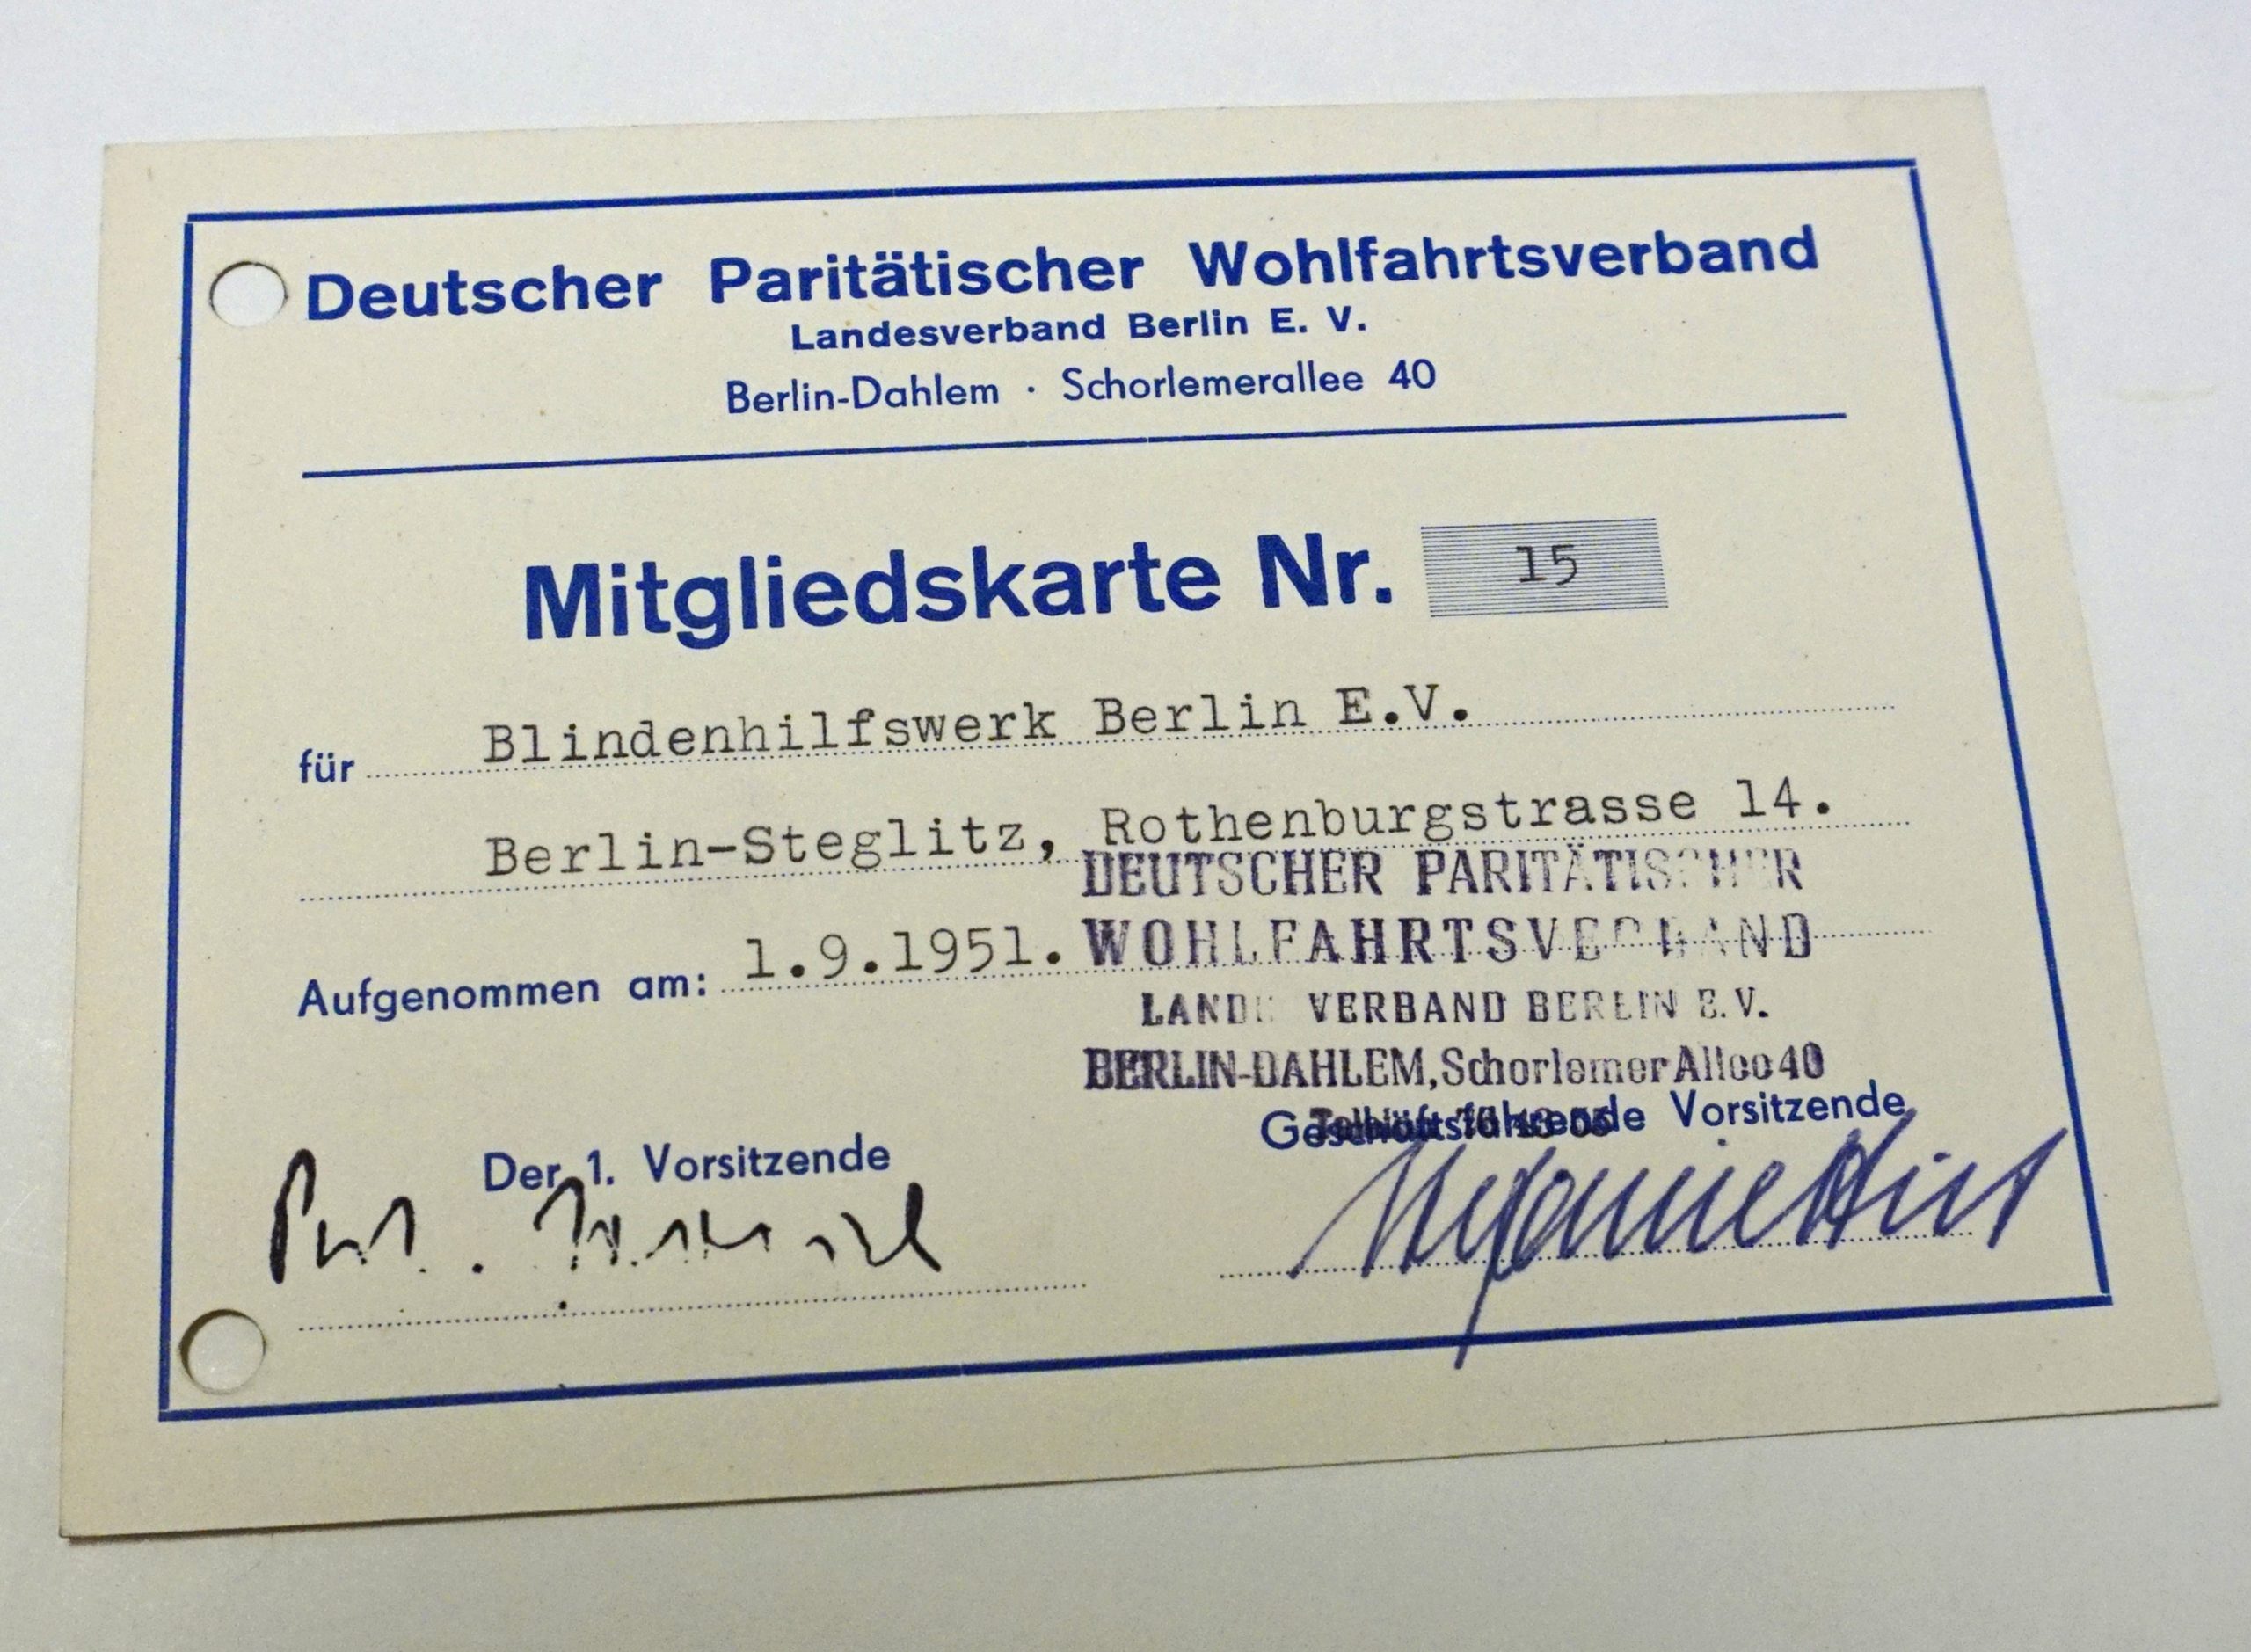 Mitgliedkarte des Blindenhilfswerkes Berlin e.V. beim Deutschen Paritätischen Wohlfahrtsverband. Das Blindenhilfswerk Berlin e.V. ist das 15. Mitglied.